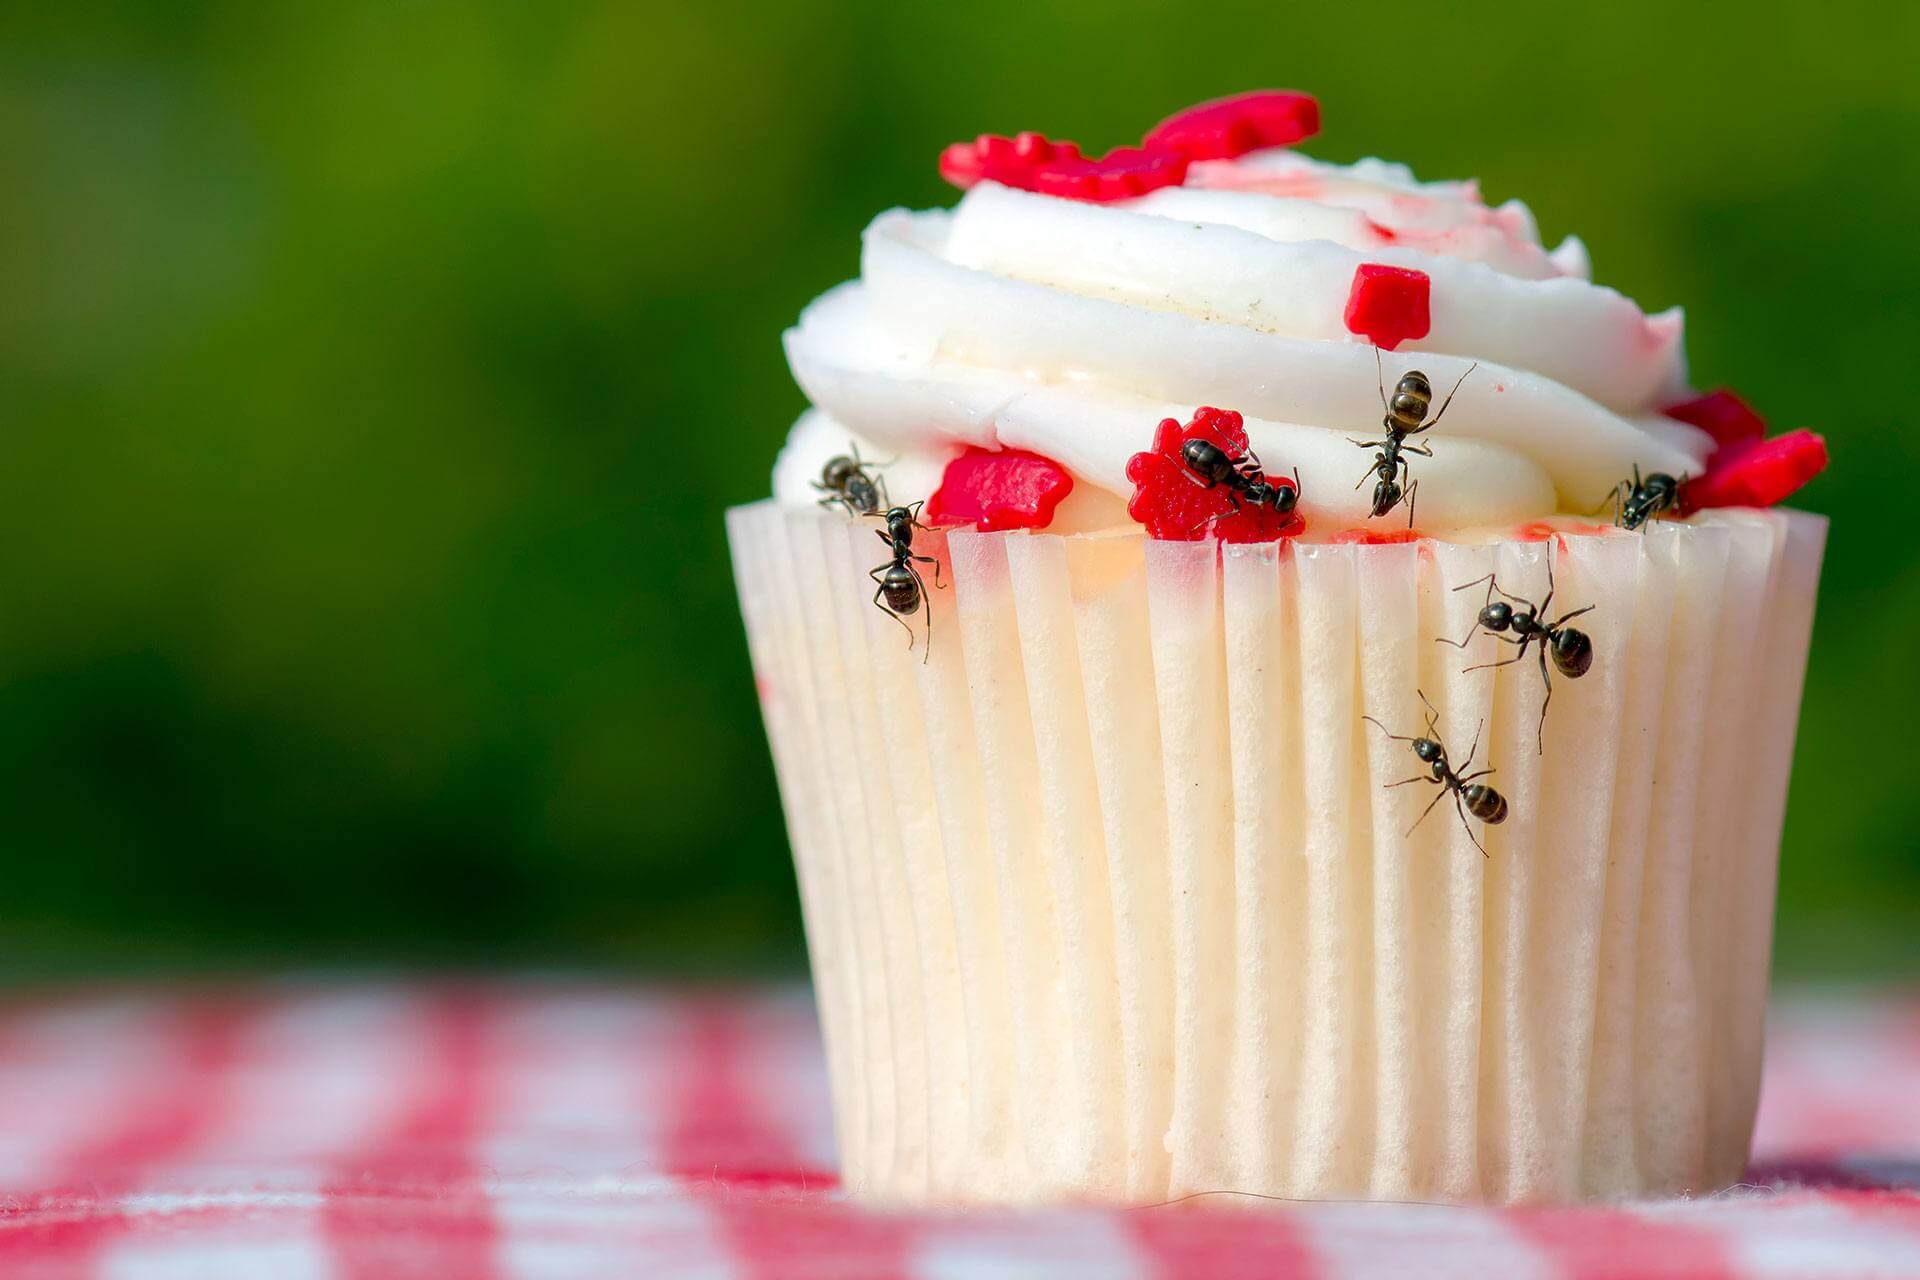 cómo eliminar las hormigas en casa